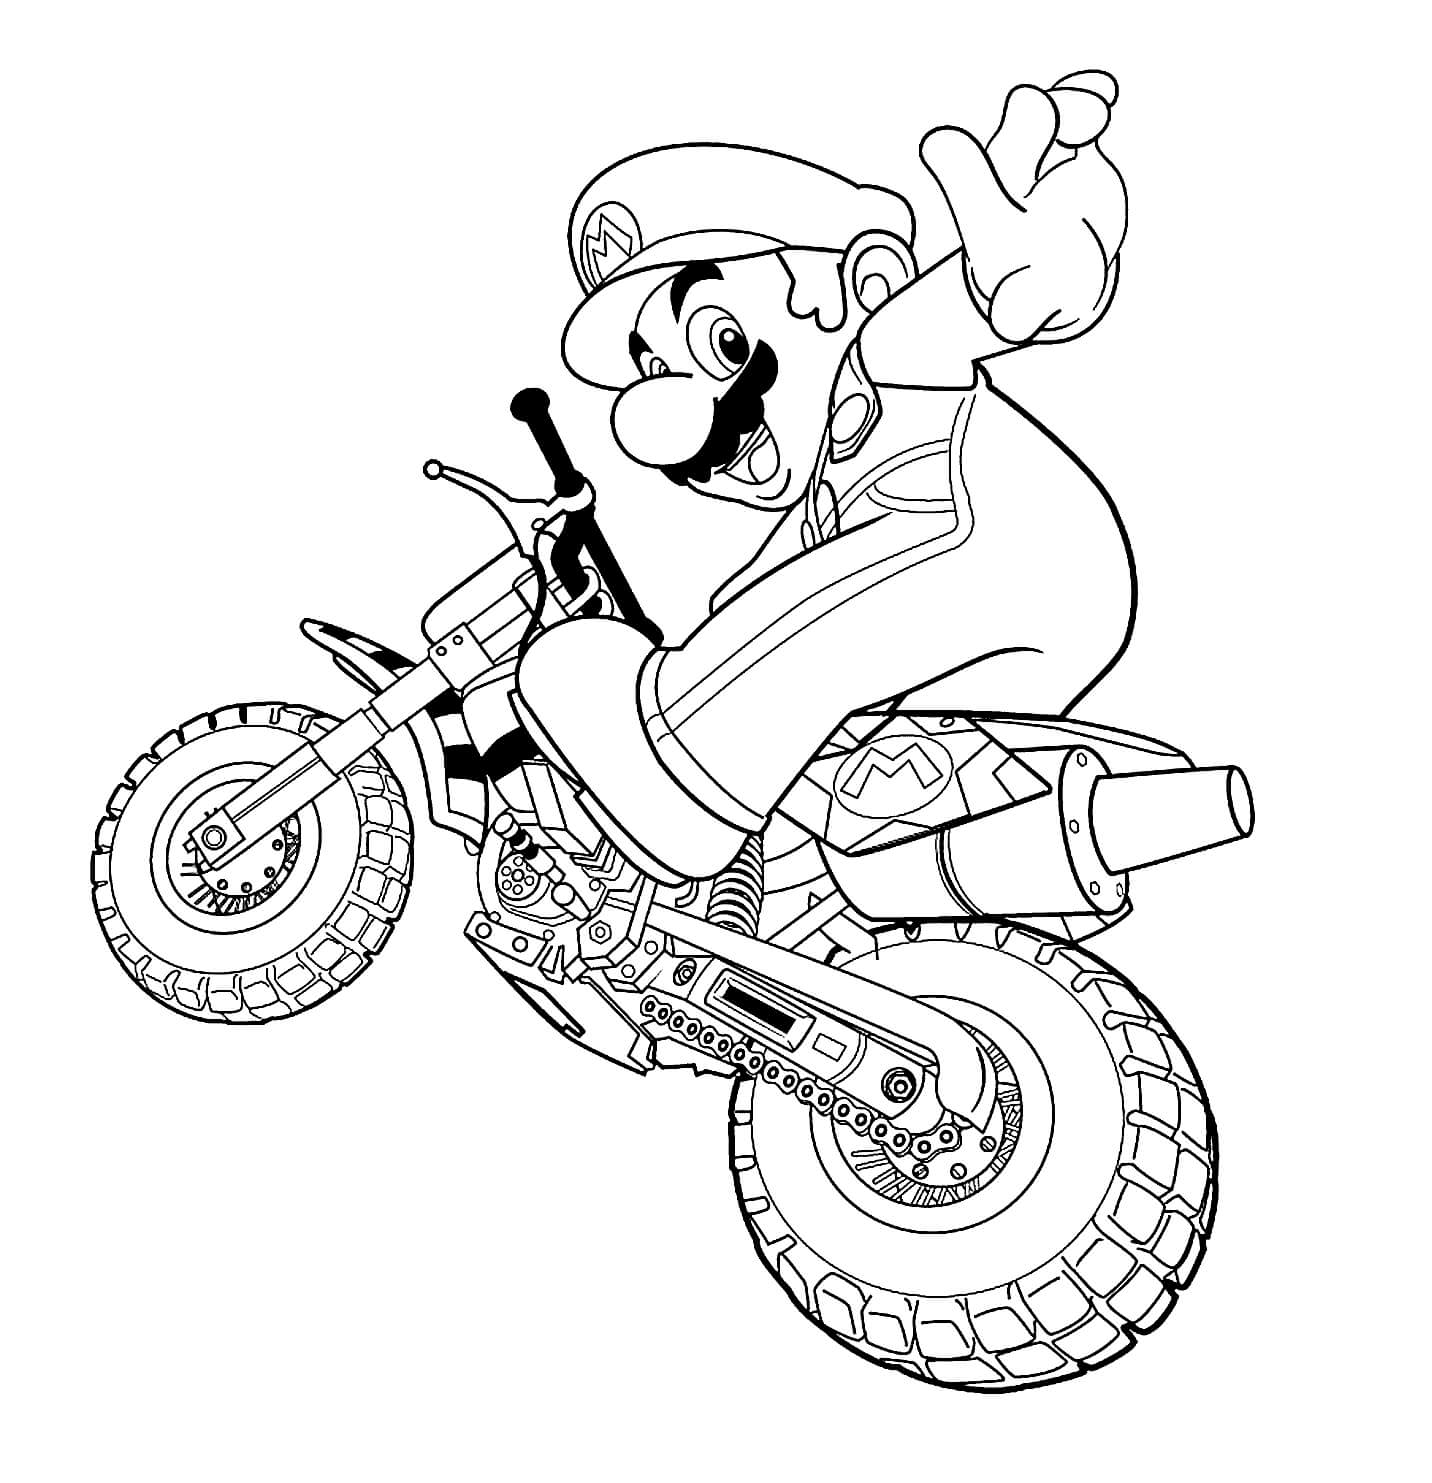 Mario Fait de La Moto coloring page